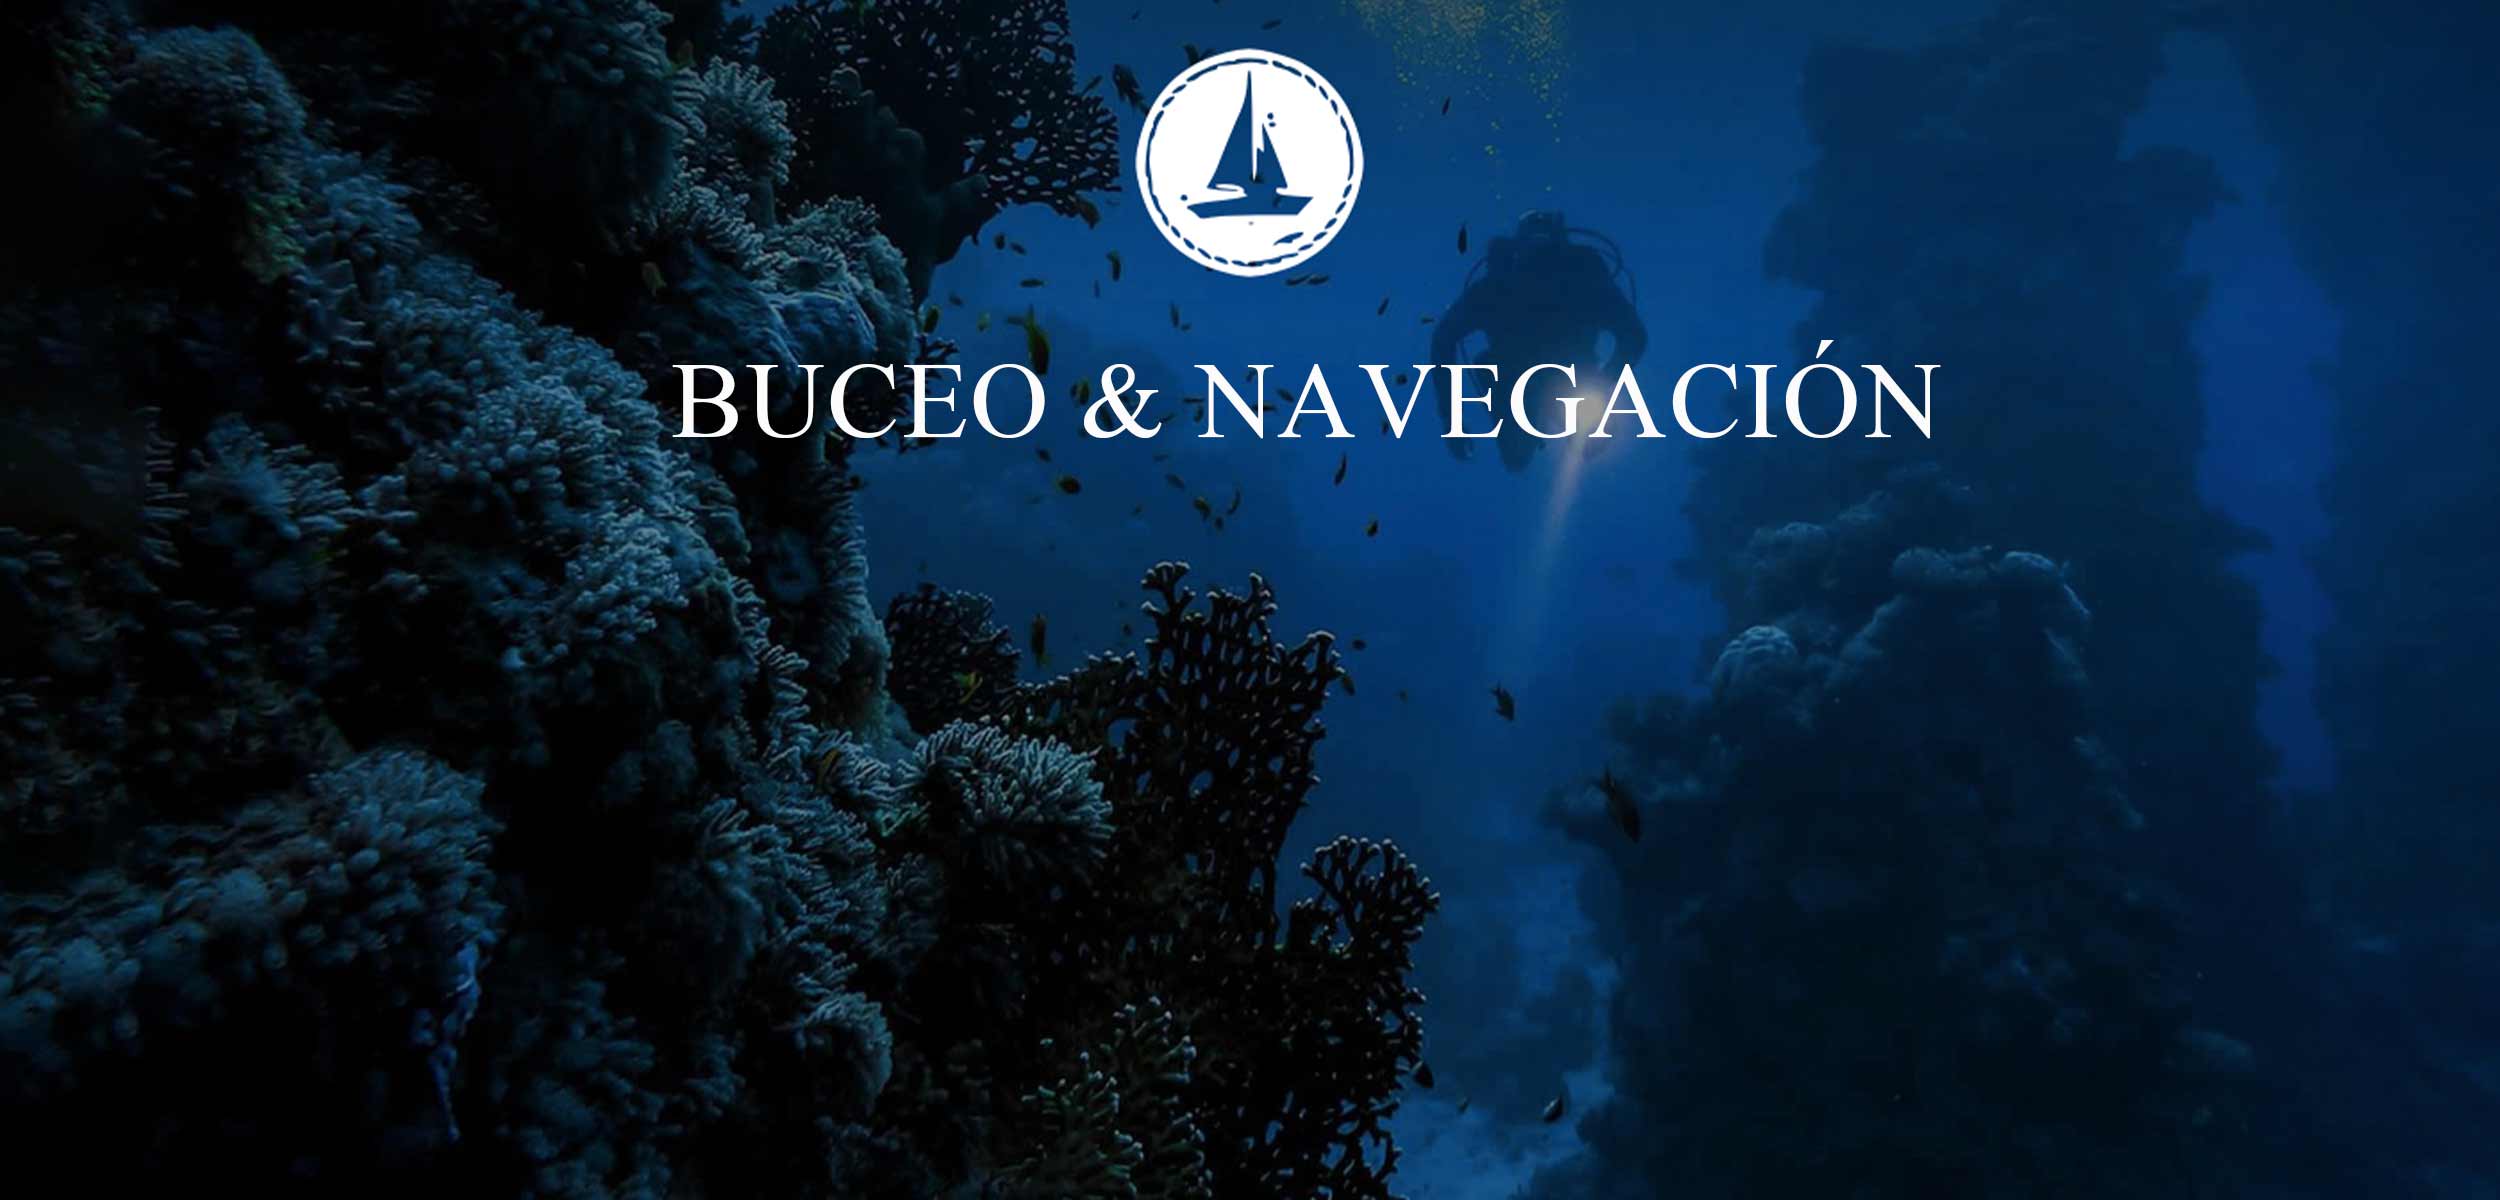 Buceo & Navegación